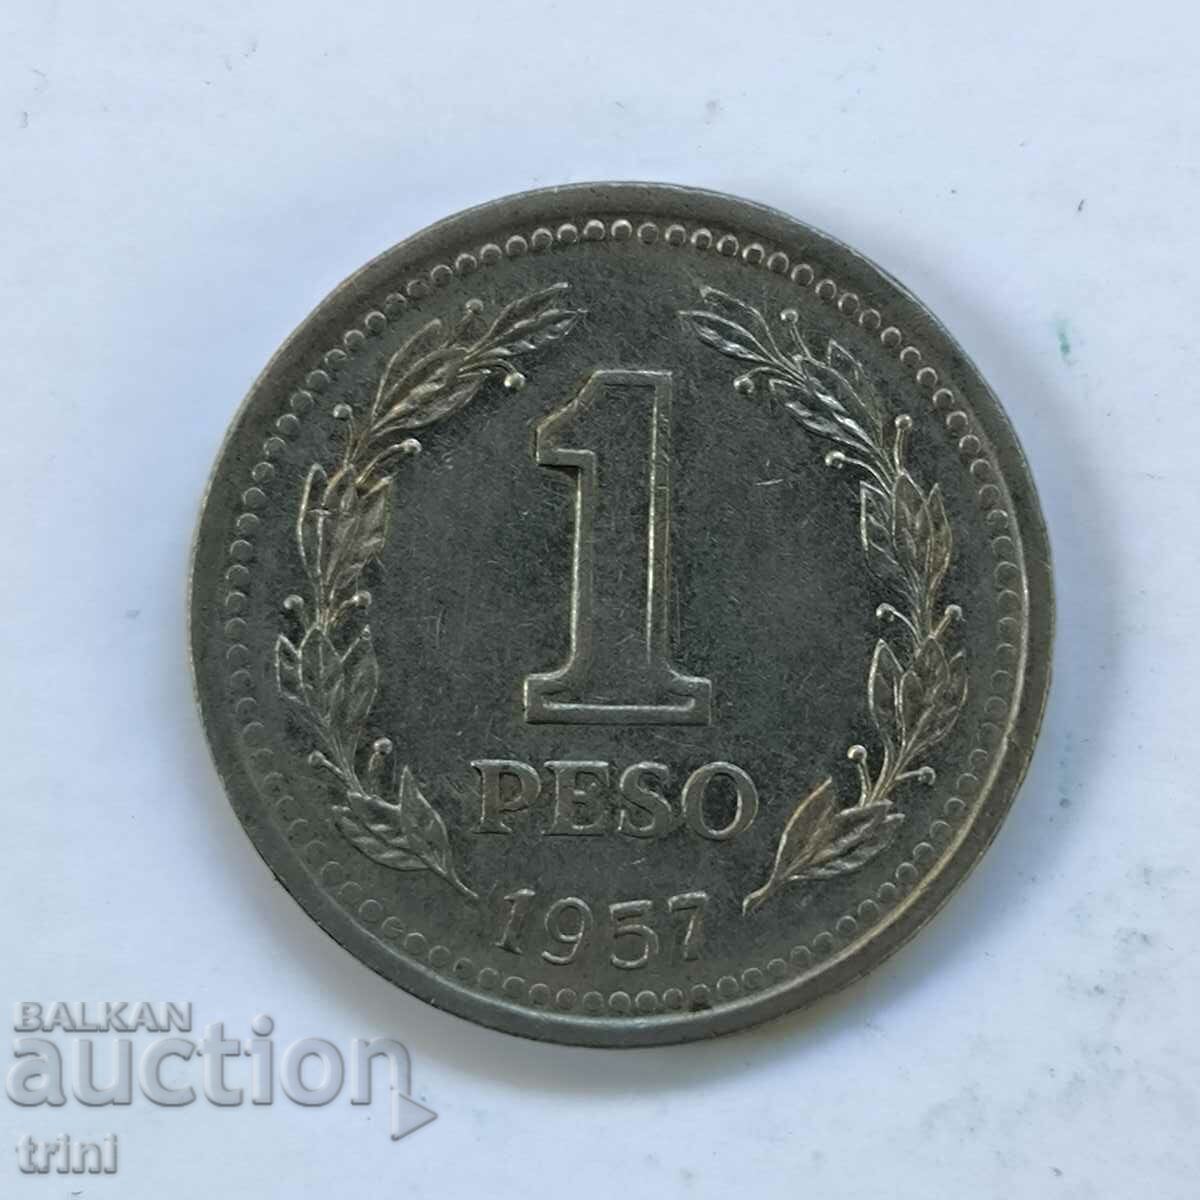 Аржентина 1 песо 1957 година